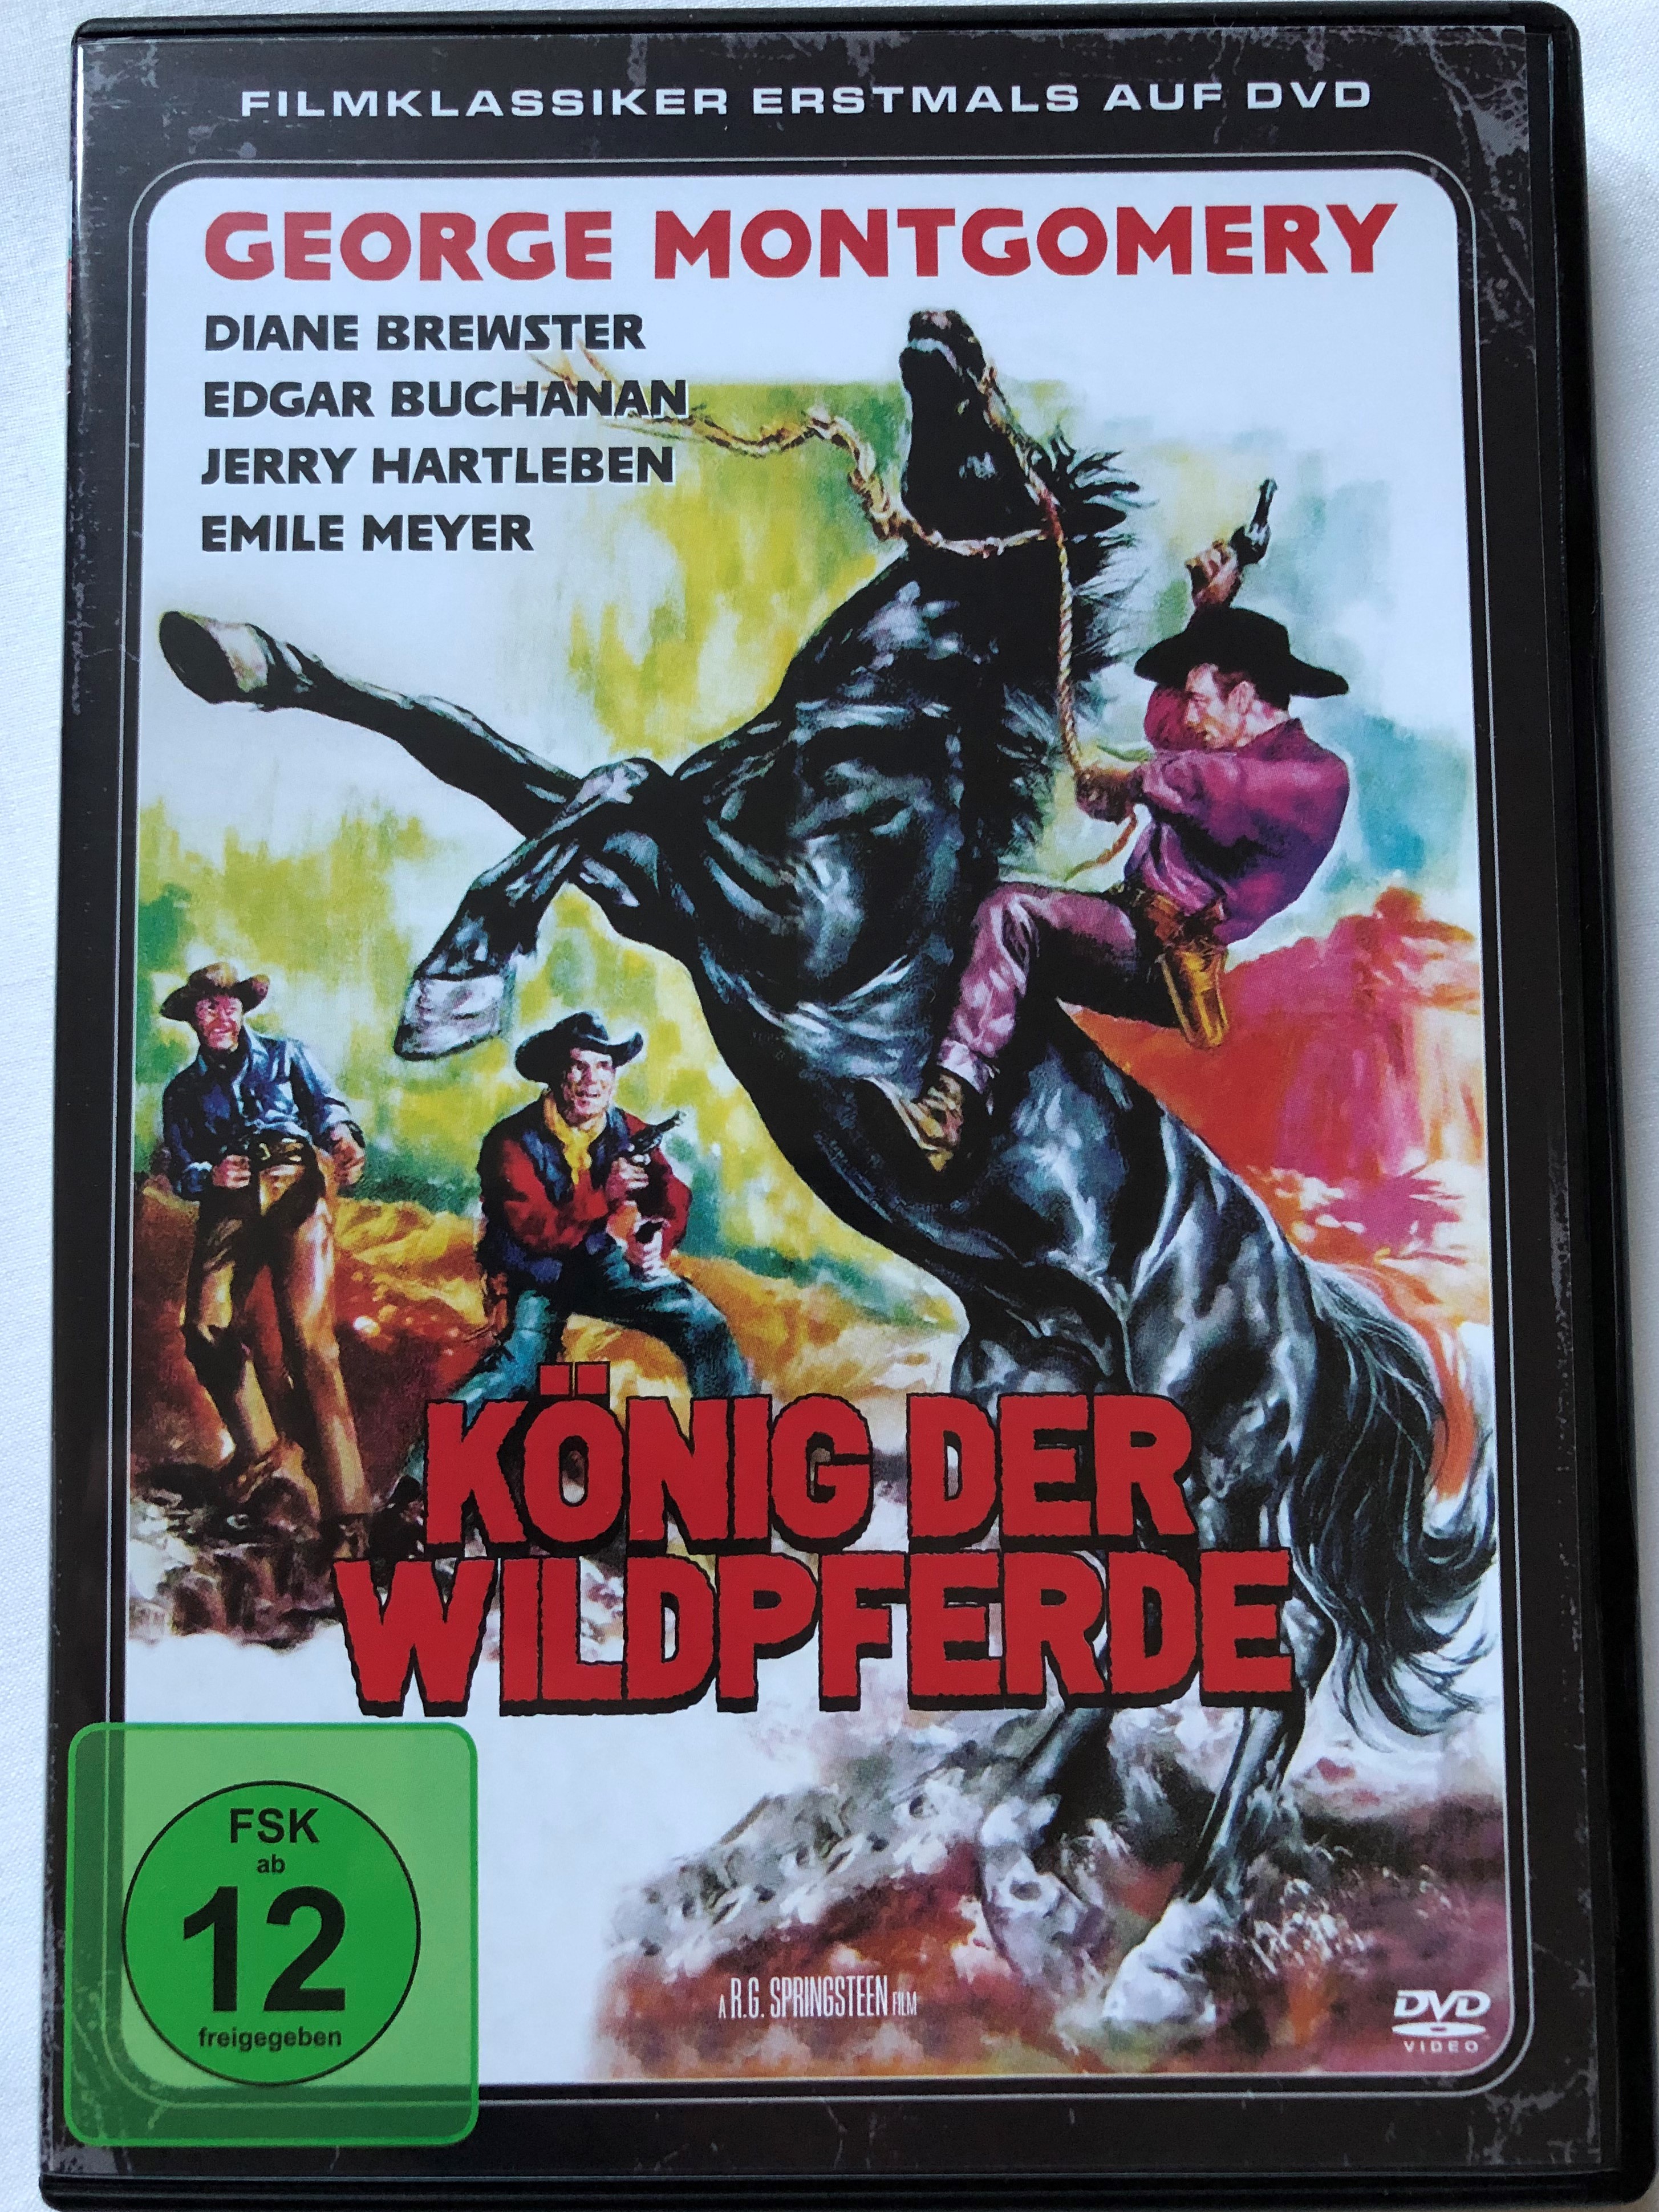 k-nig-der-wildpferde-dvd-1959-king-of-the-wild-stallions-directed-by-r.g.-springsteen-starring-george-montgomery-diane-brewster-edgar-buchanan-jerry-hartleben-filmklassiker-erstmals-auf-dvd-1-.jpg